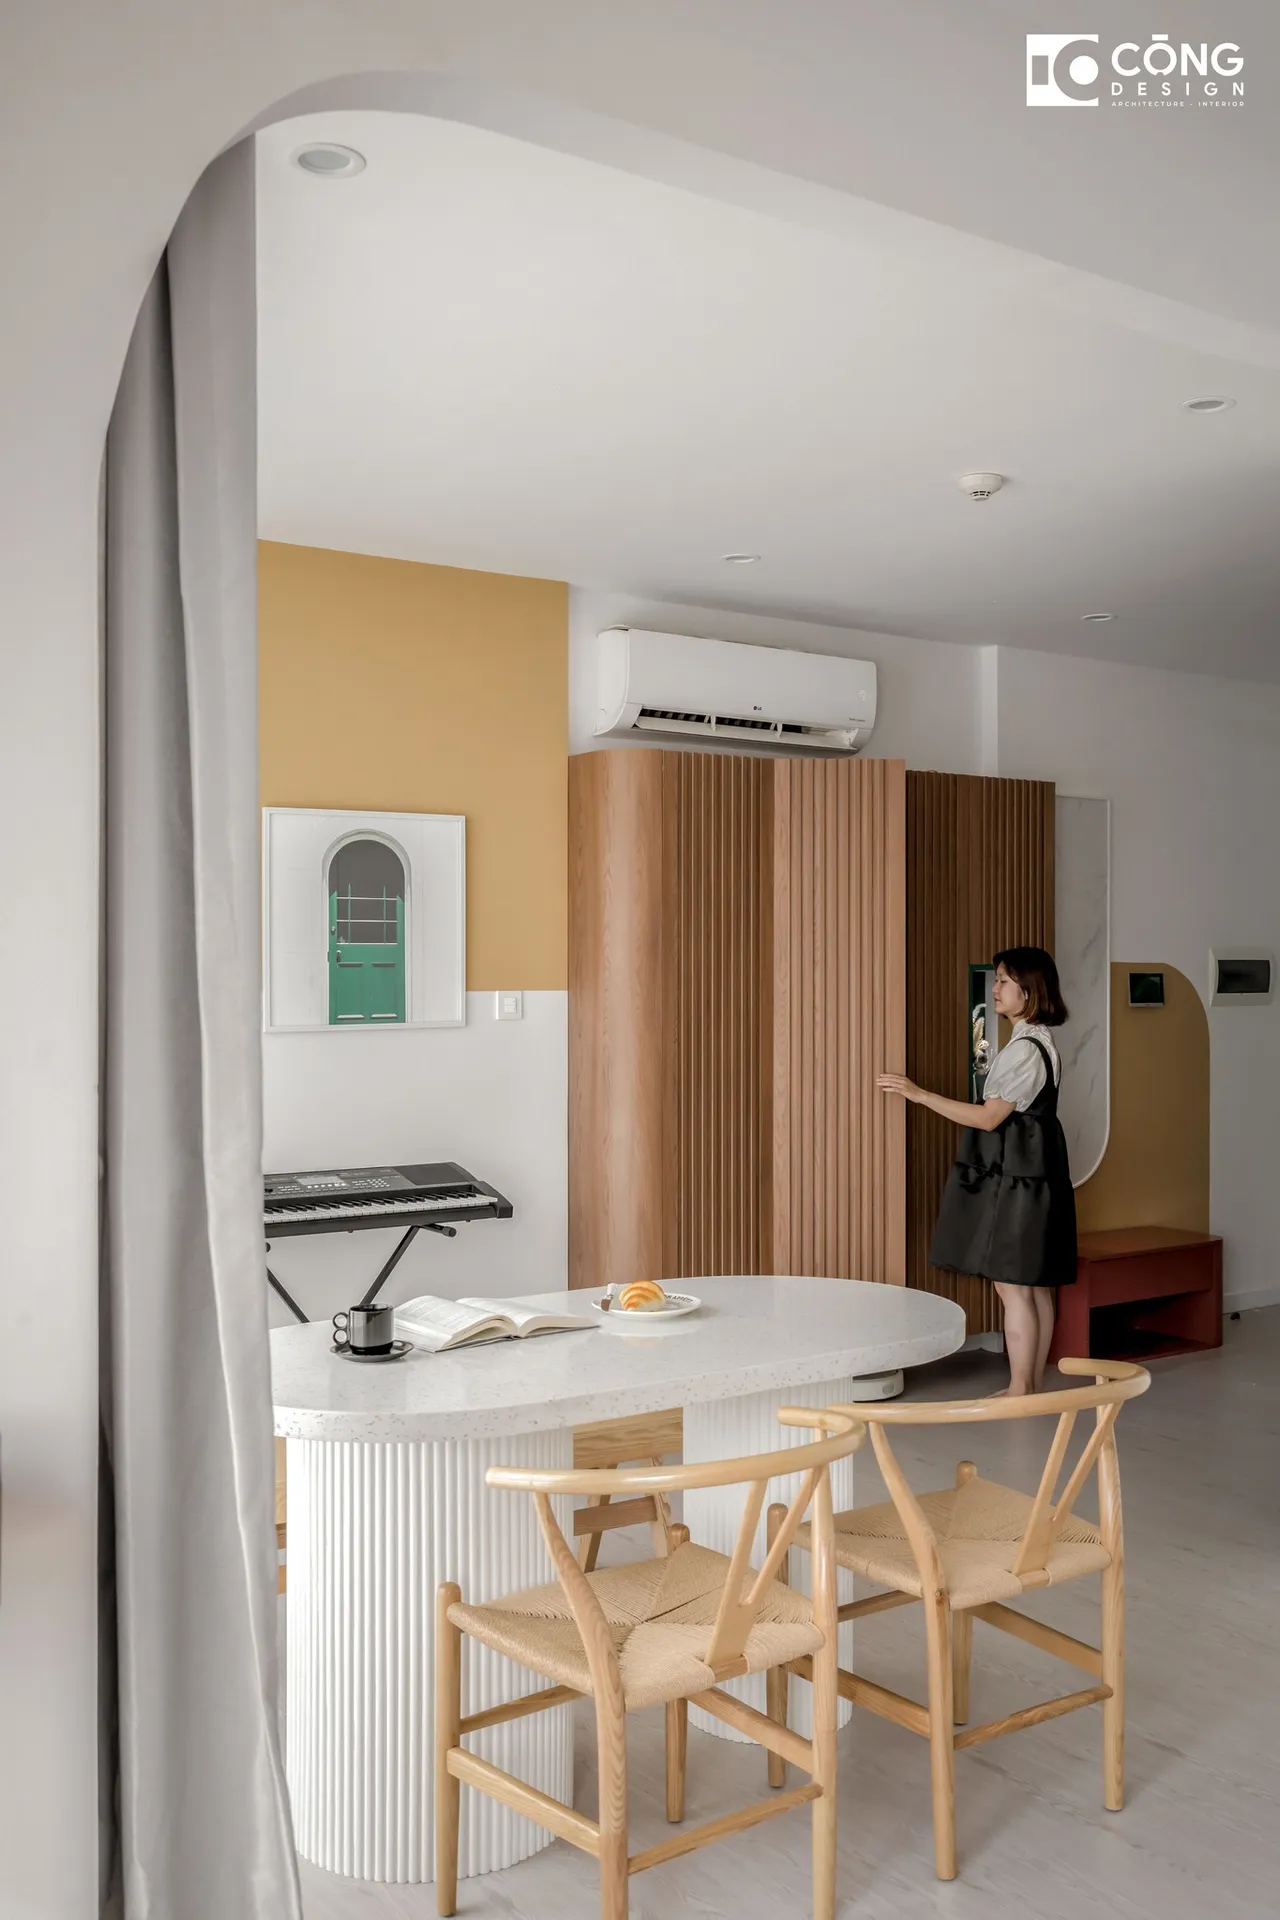 Hoàn thiện nội thất phòng ăn Căn hộ S503 Vinhomes Grand Park phong cách Tối giản Minimalist, phong cách Color Block